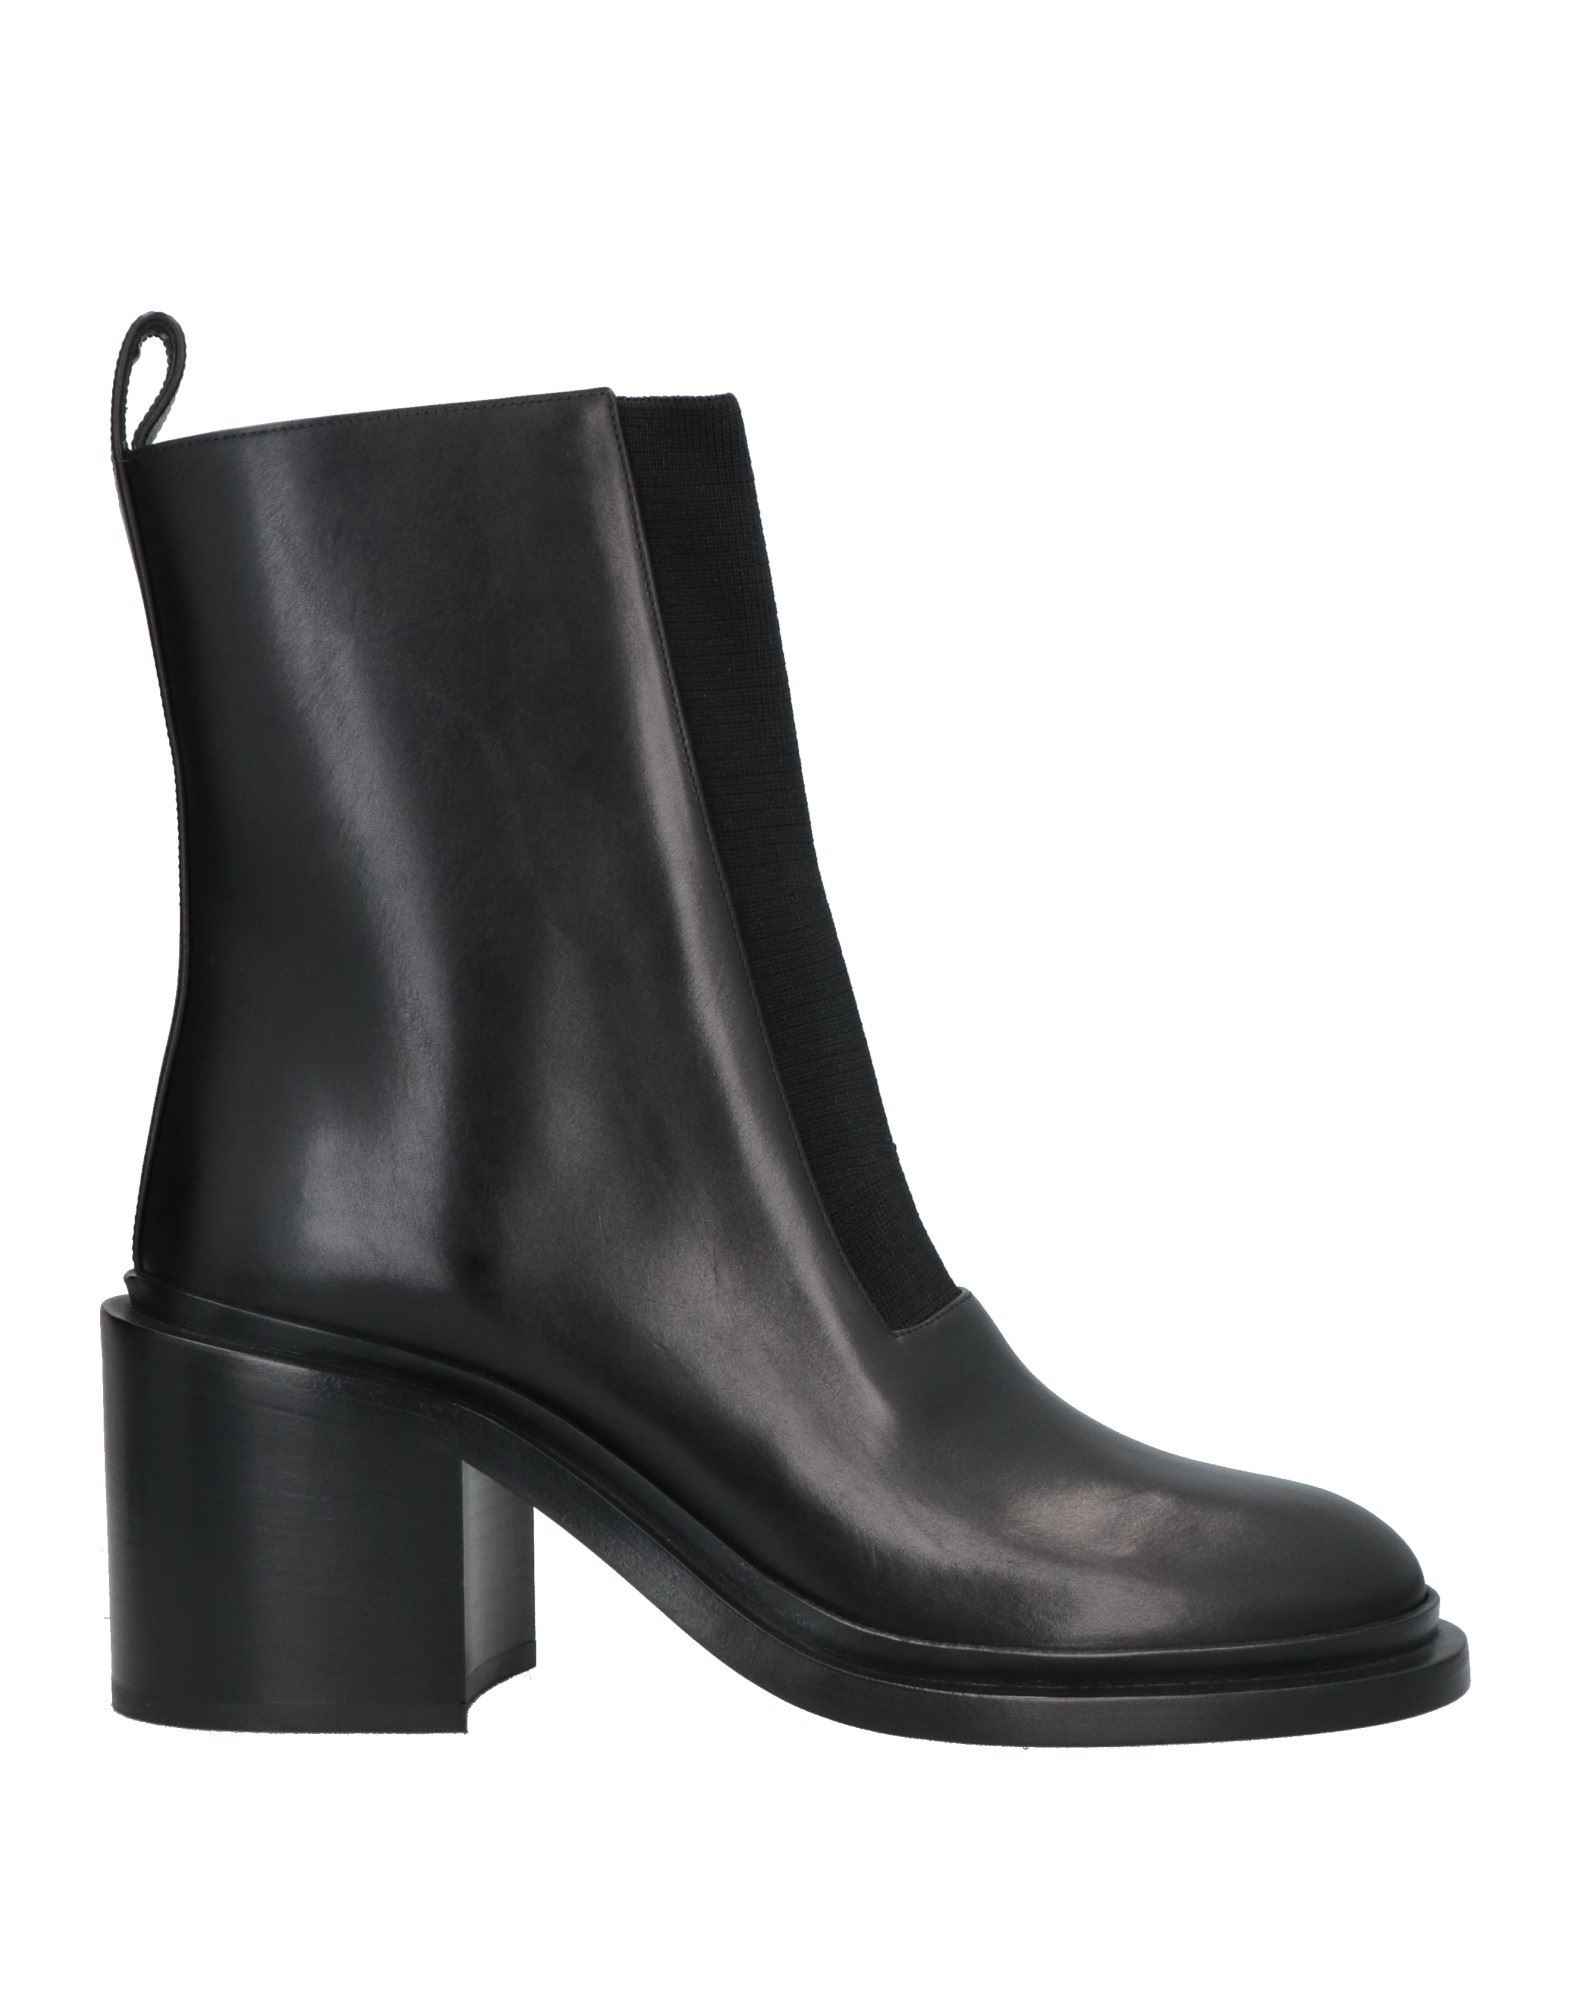 Shop Jil Sander Woman Ankle Boots Black Size 8 Soft Leather